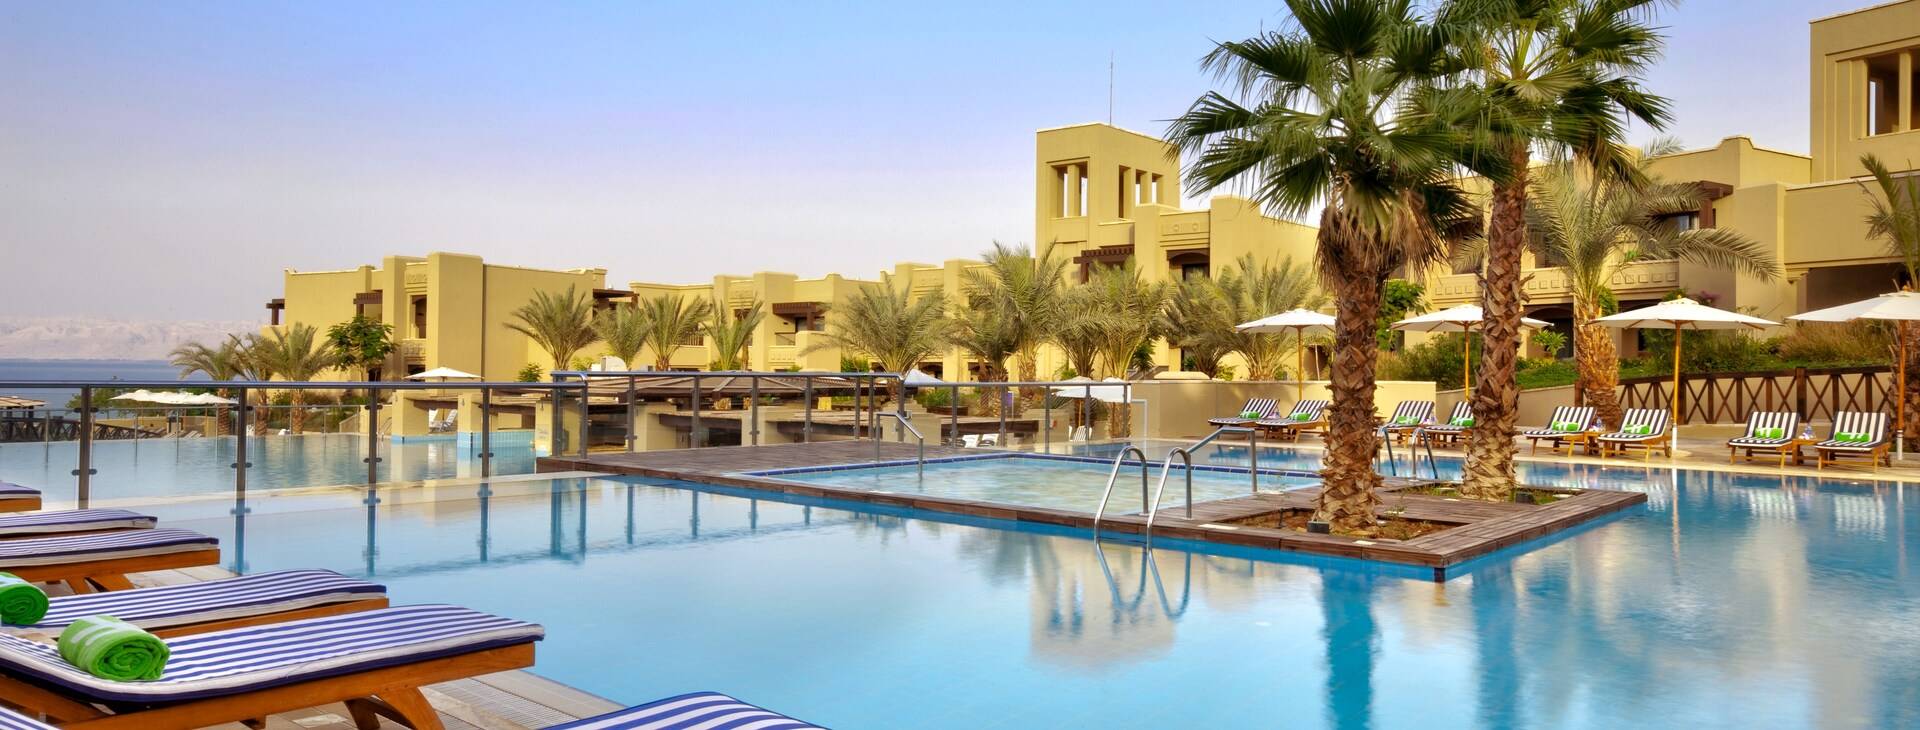 Holiday Inn Resort Dead Sea Obrázek1